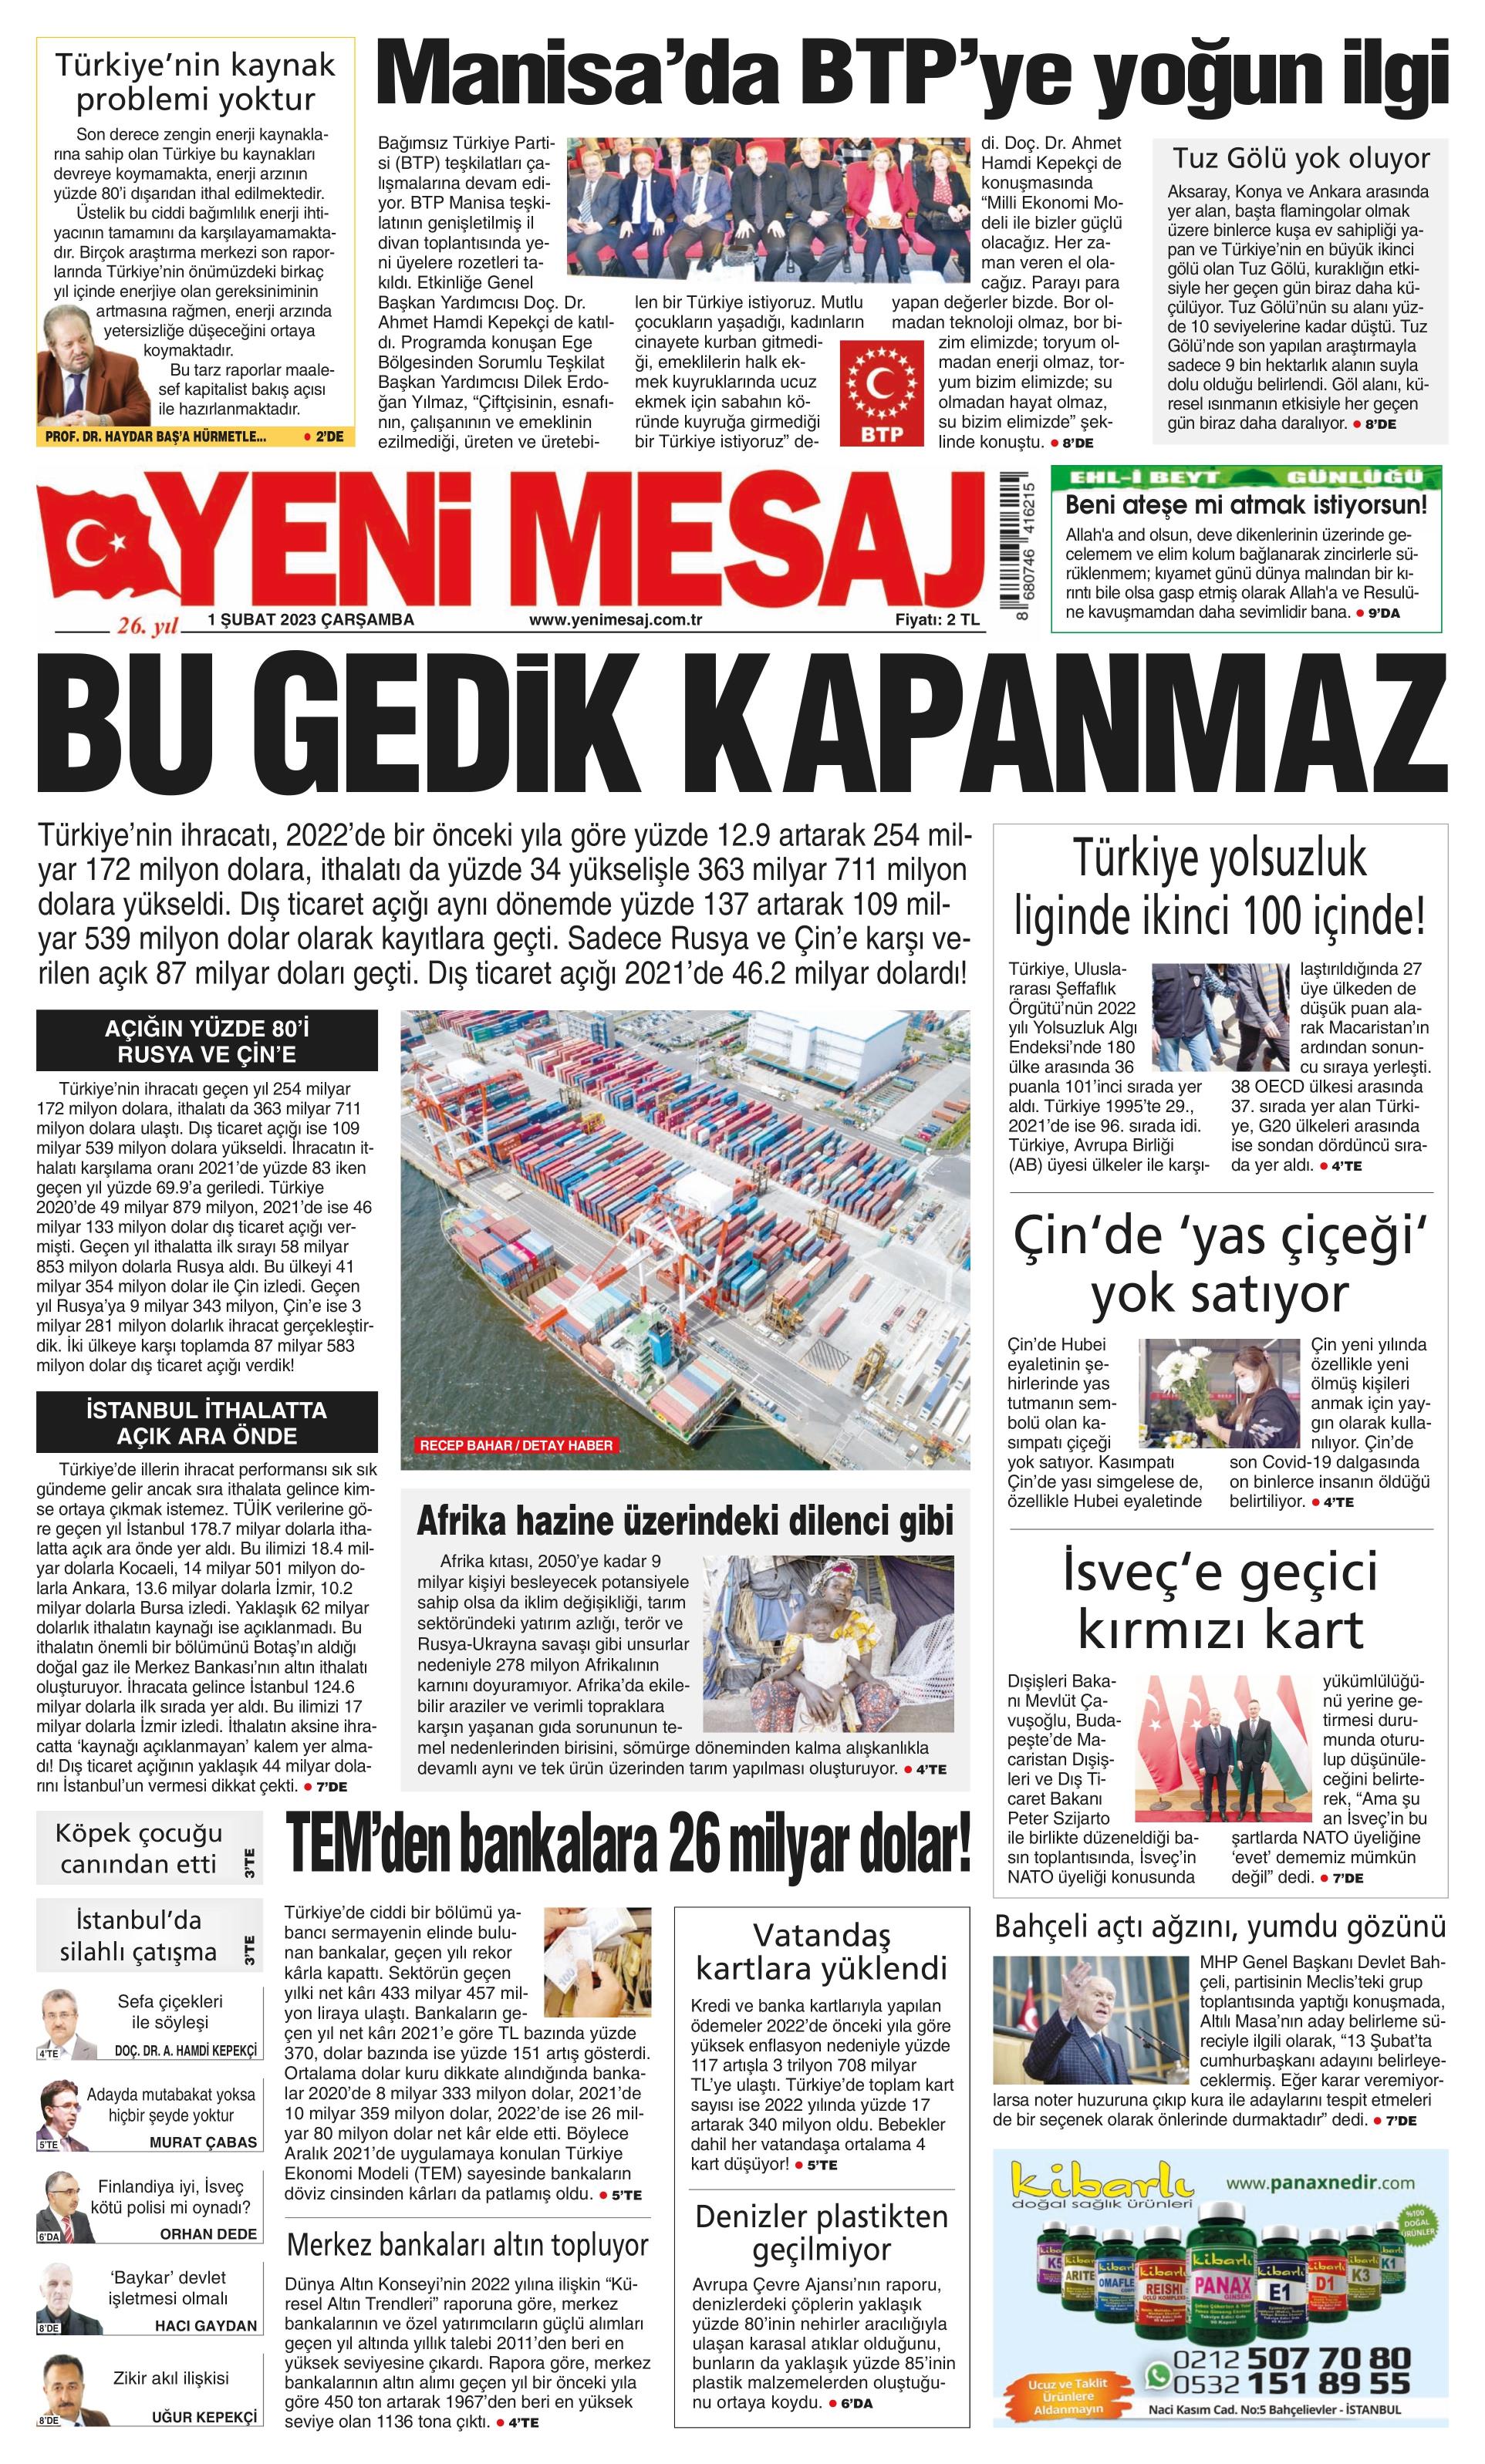 Yeni Mesaj Gazetesi 1 Şubat 2023, Çarşamba Günü Manşeti